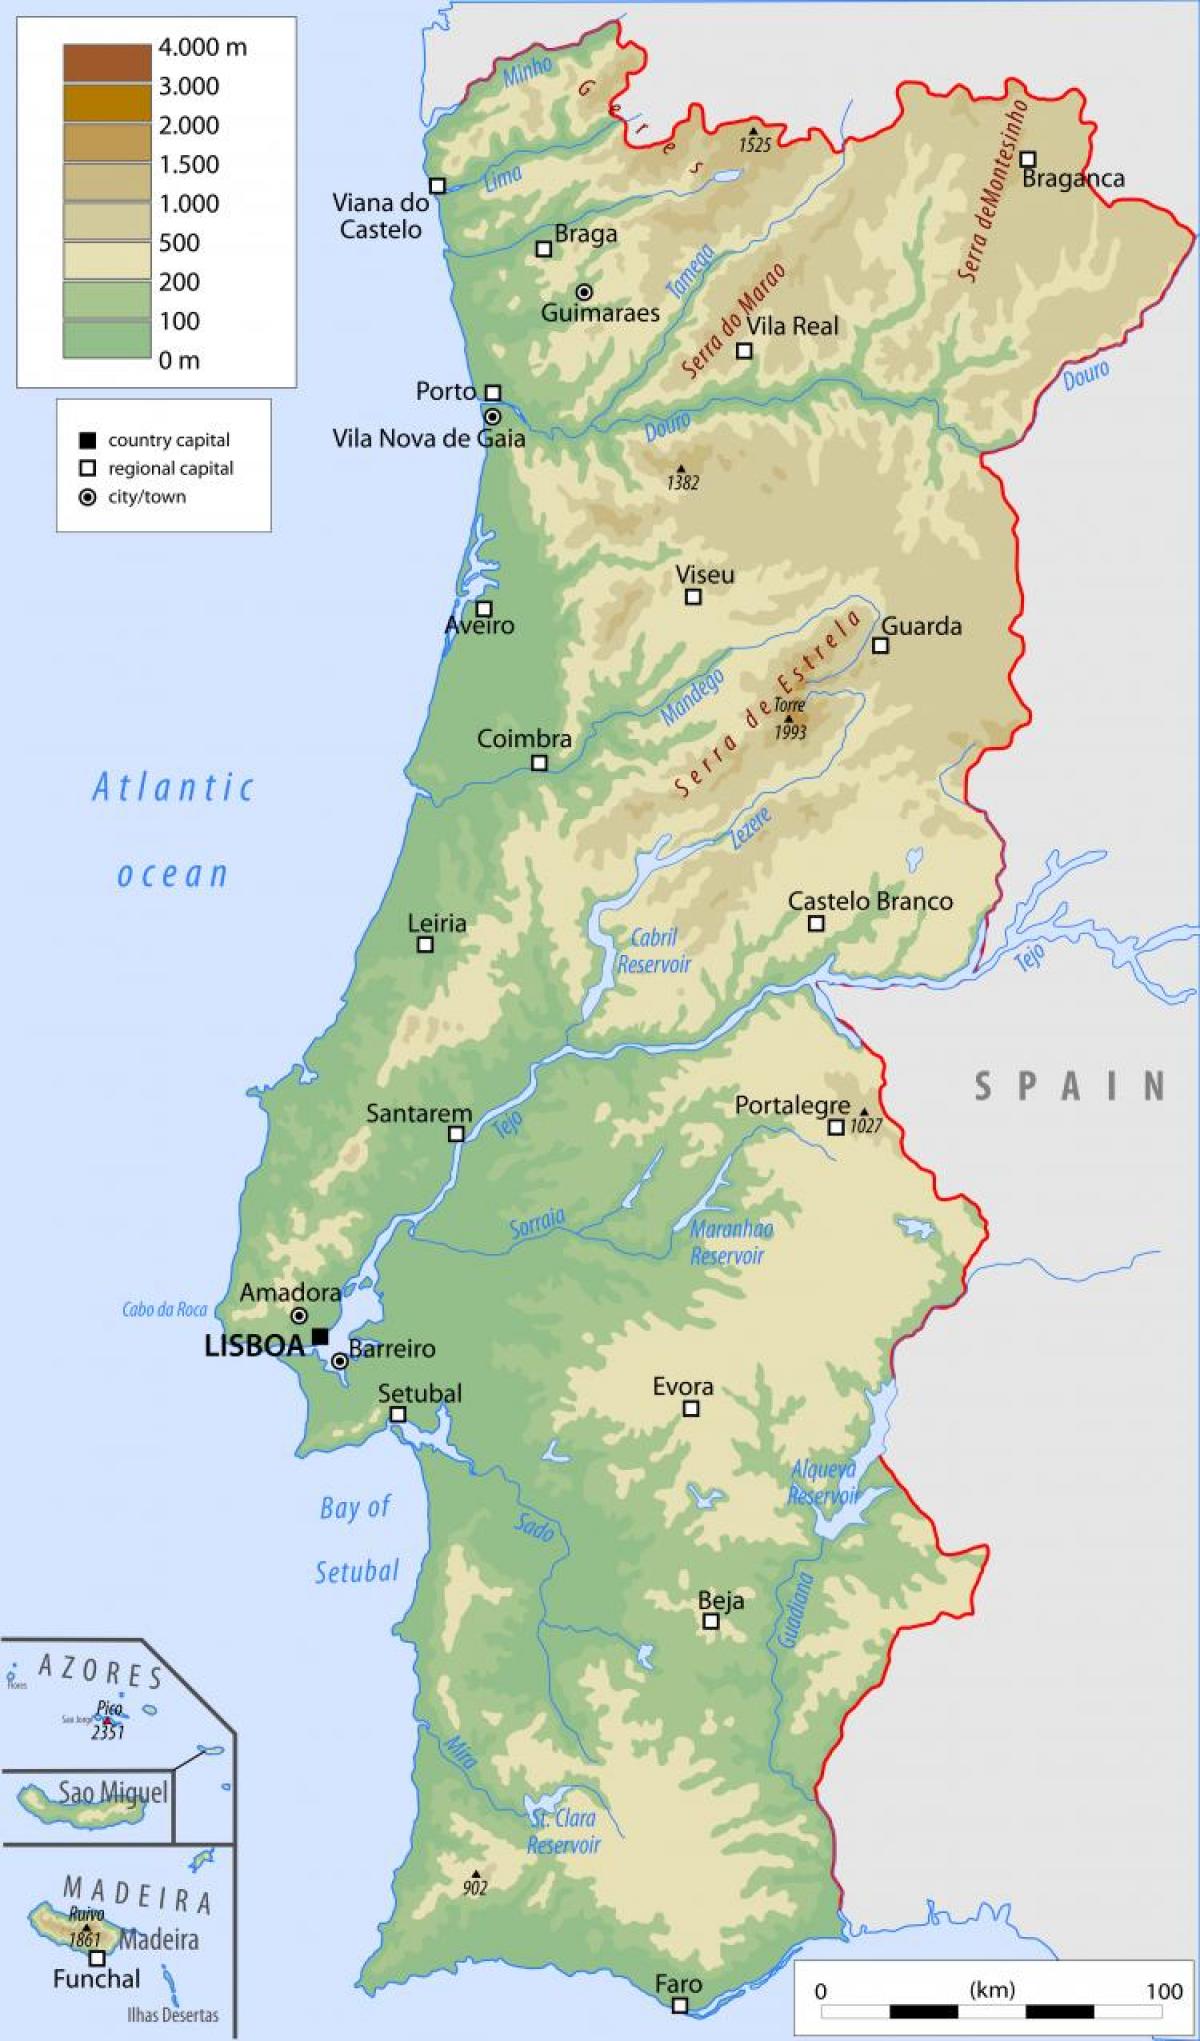 Mapa de Portugal com as principais cidades